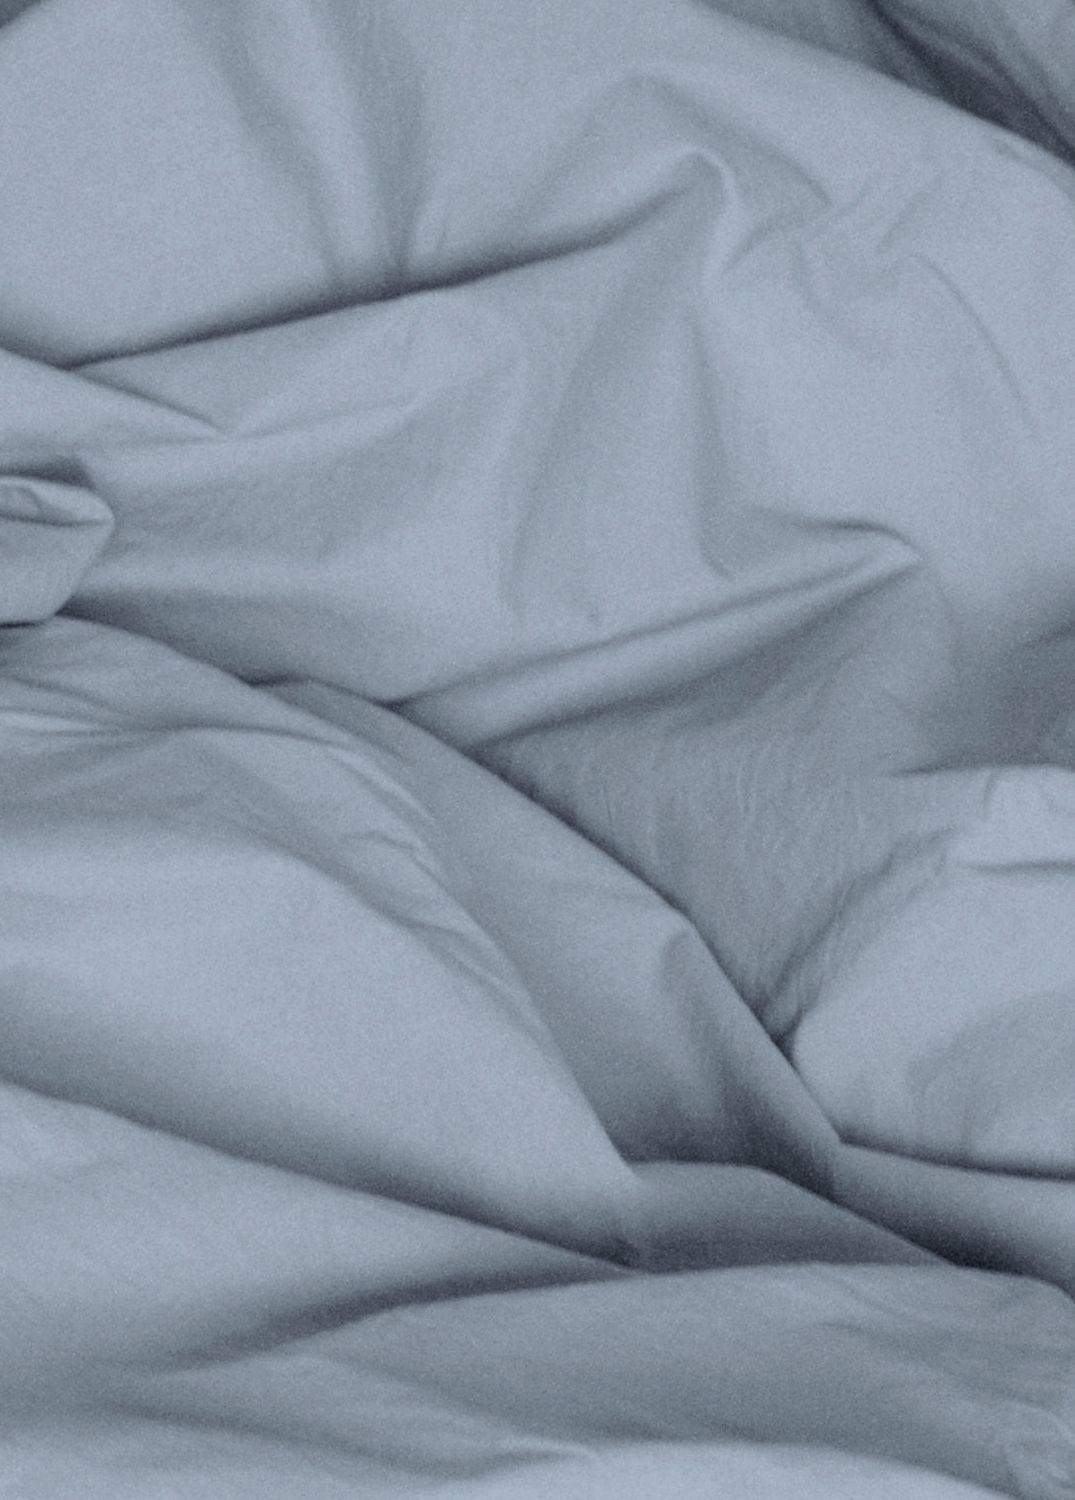 Bomuldspercale sengesæt - Dueblå